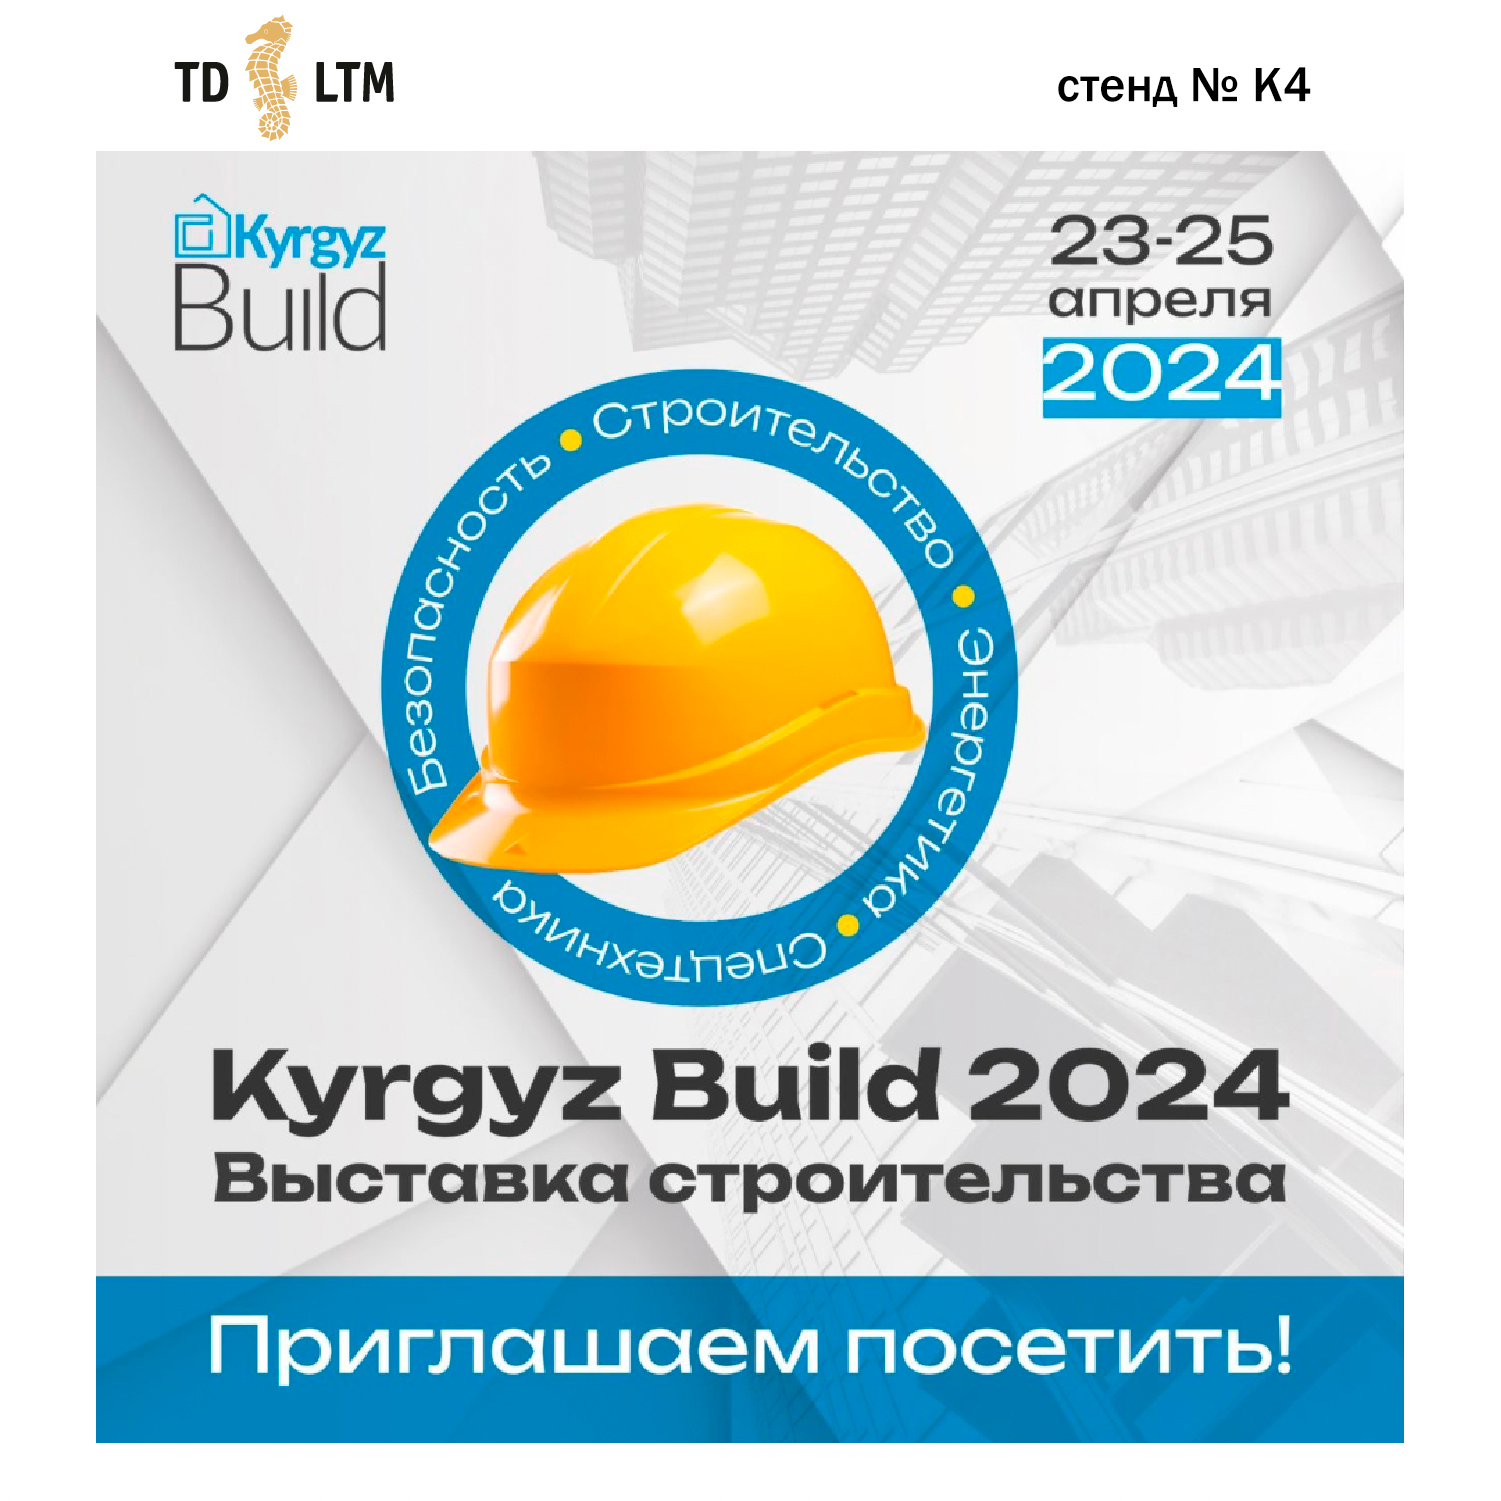 «KyrgyzBuild 2024»: приглашаем посетить наш стенд